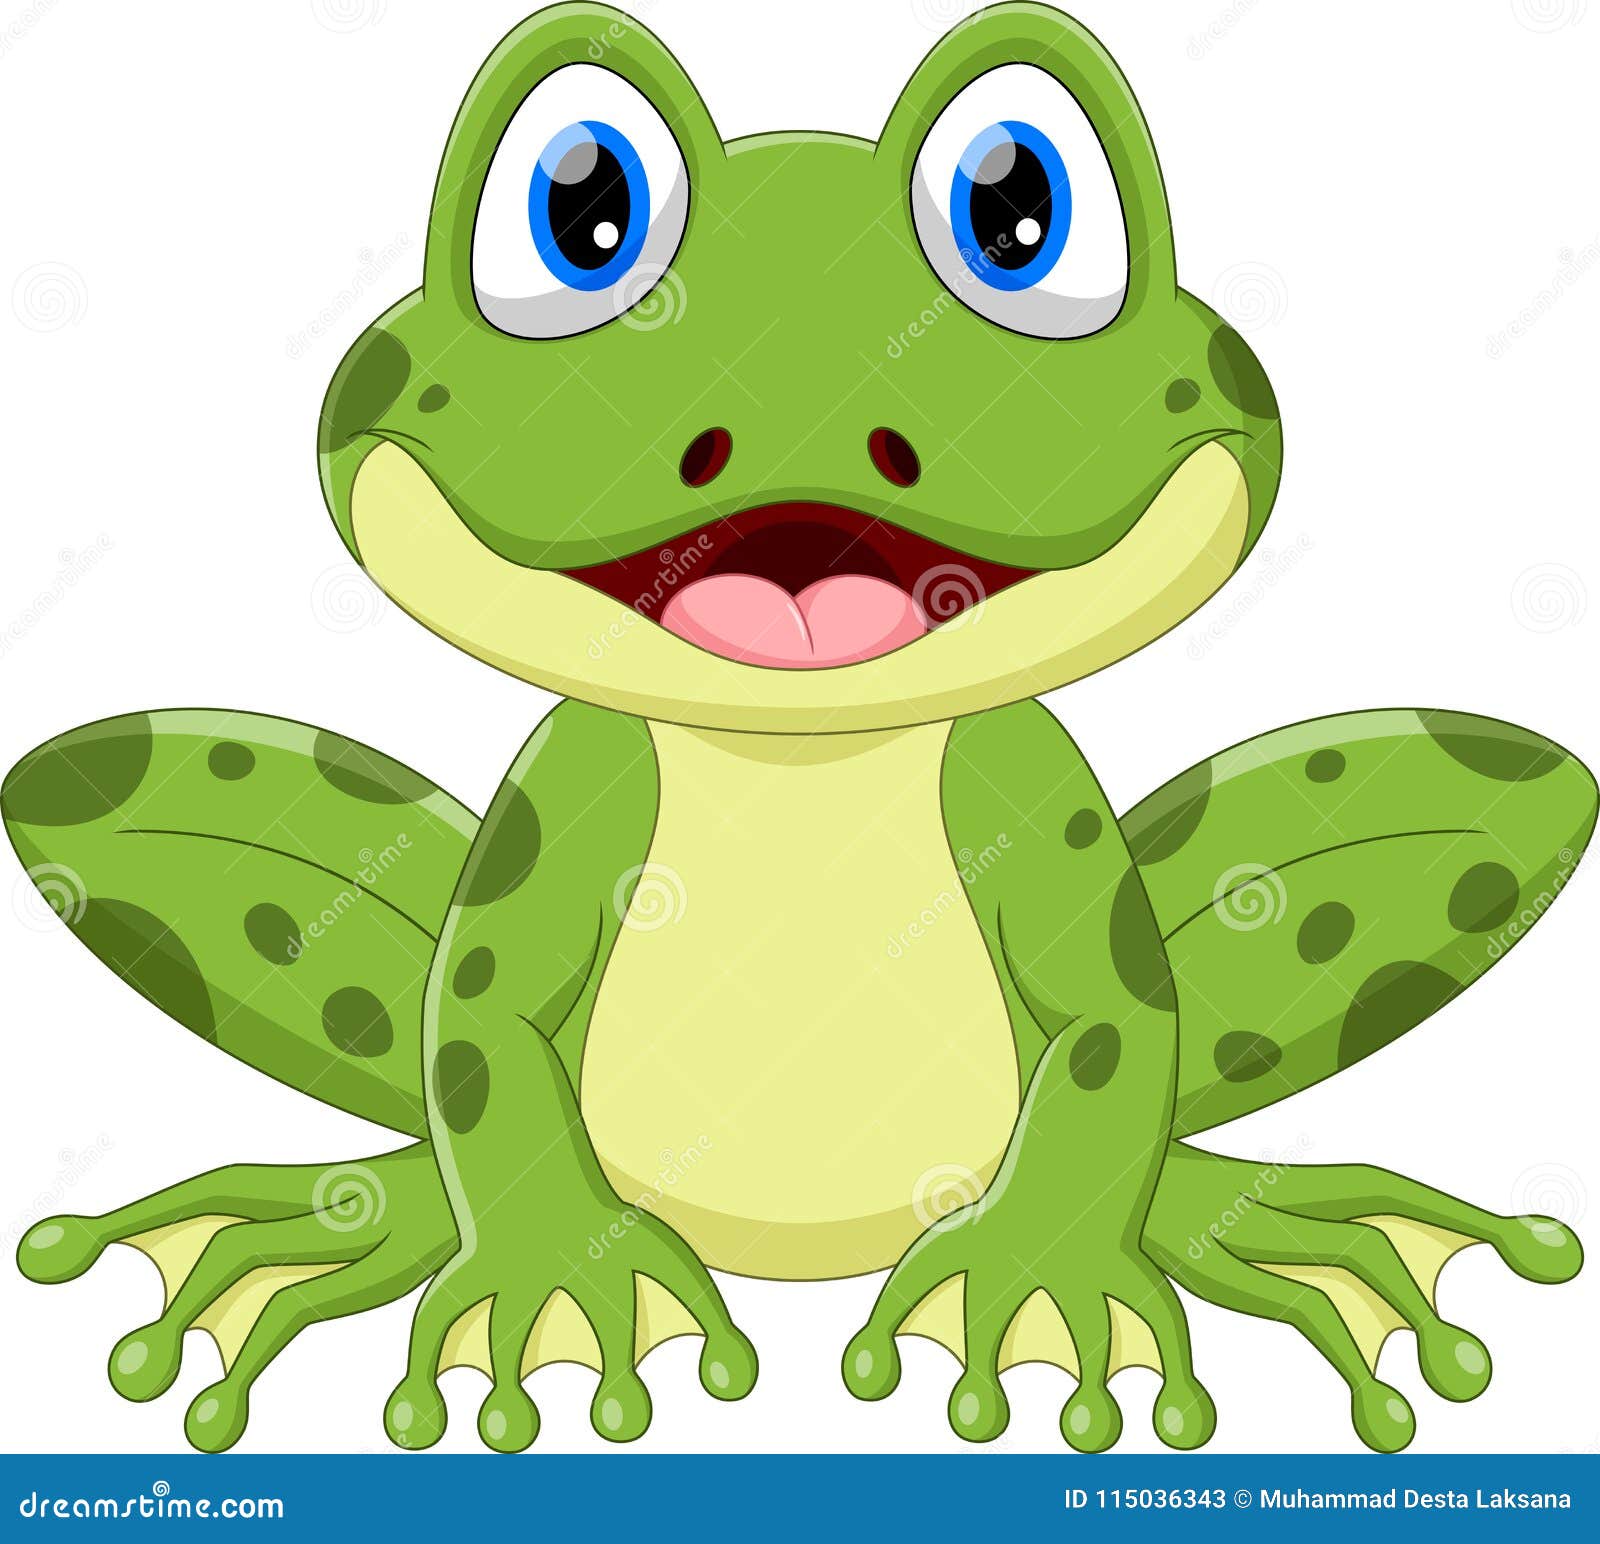 40 Cartoon Frog Vector - Pixabay - Pixabay